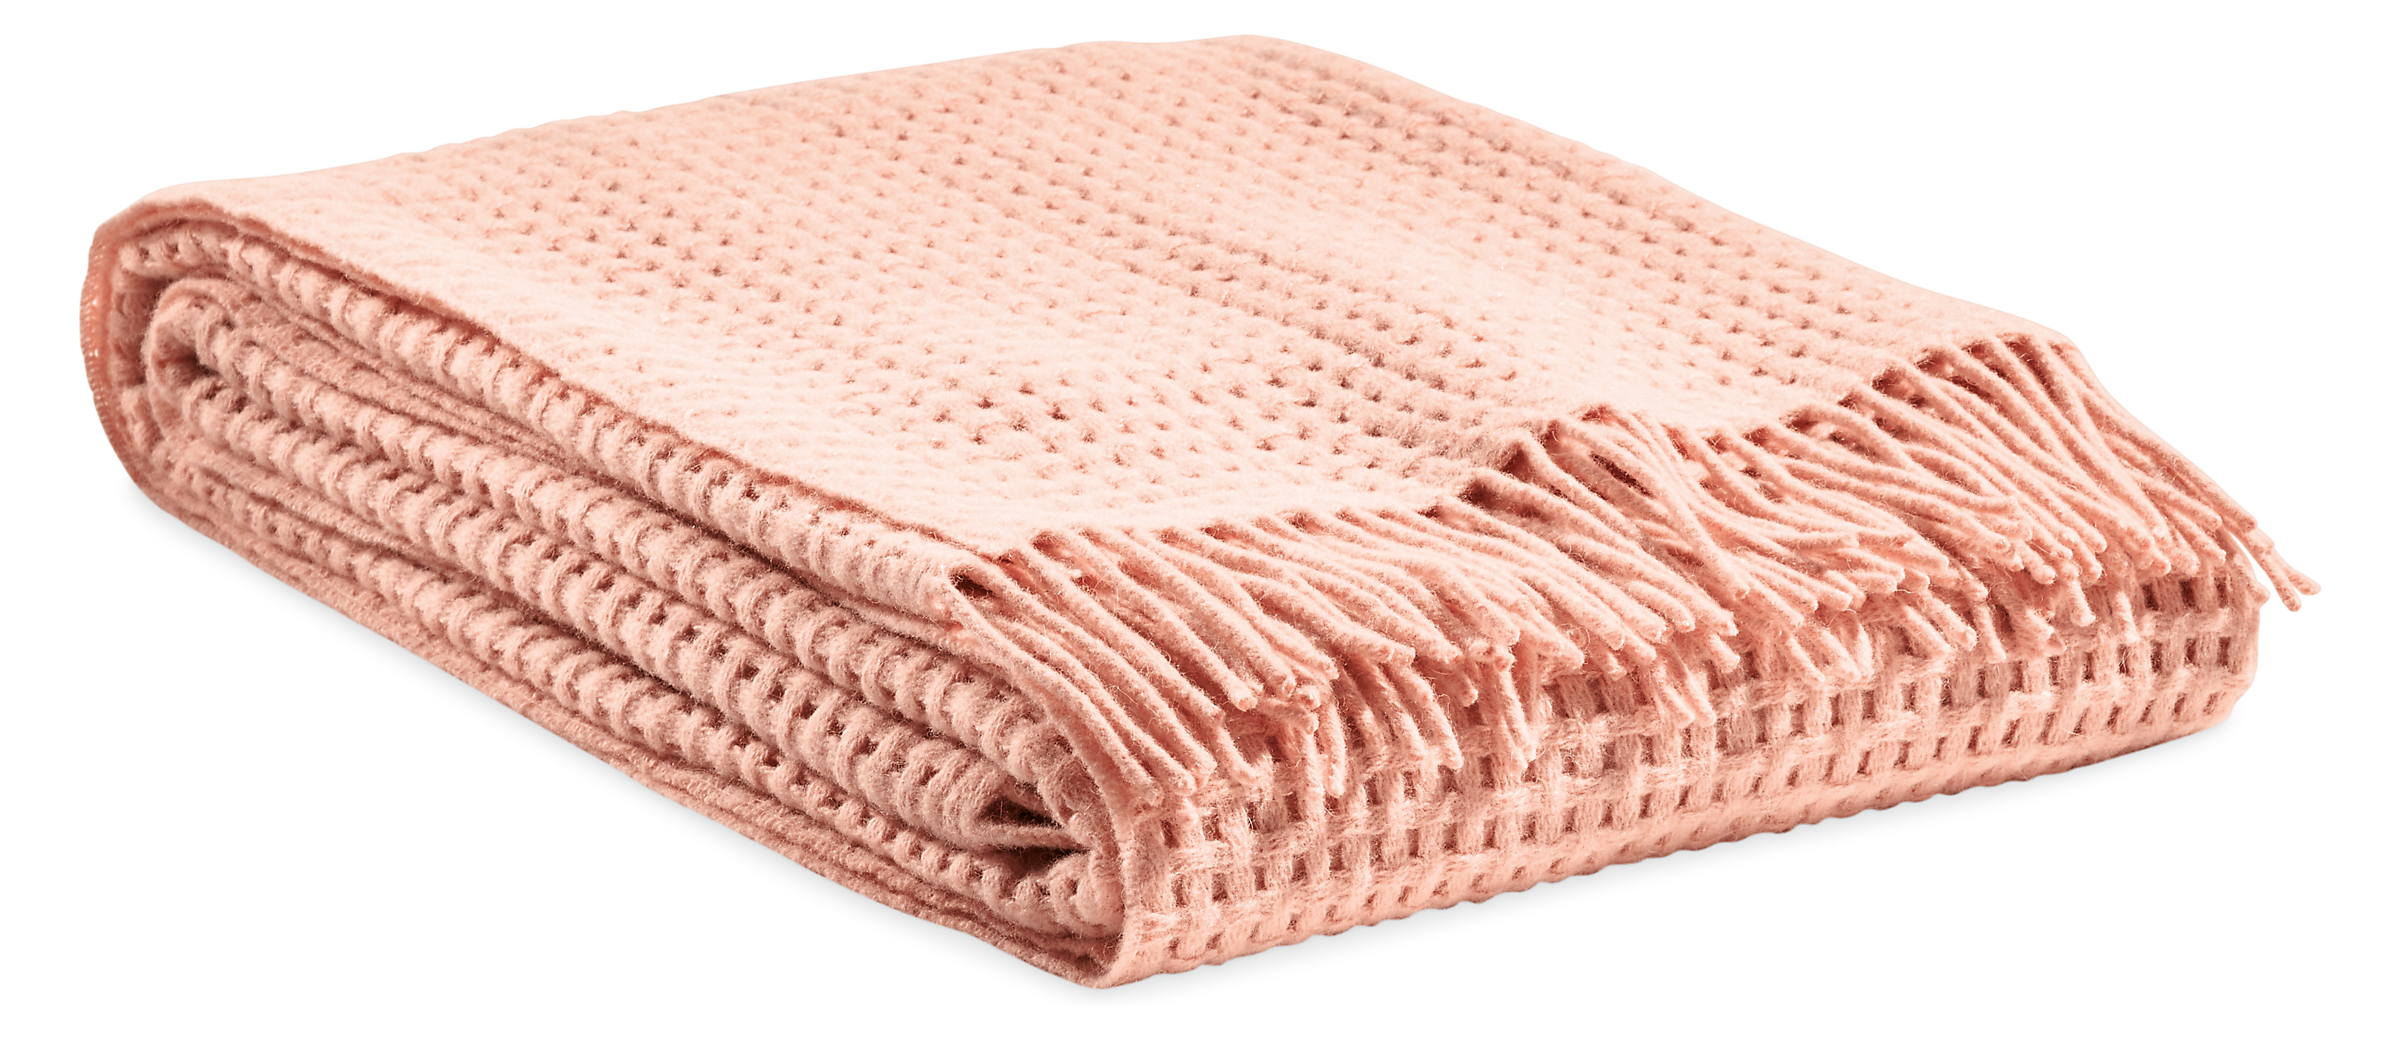 Homage Basketweave Throw Blanket in Blush